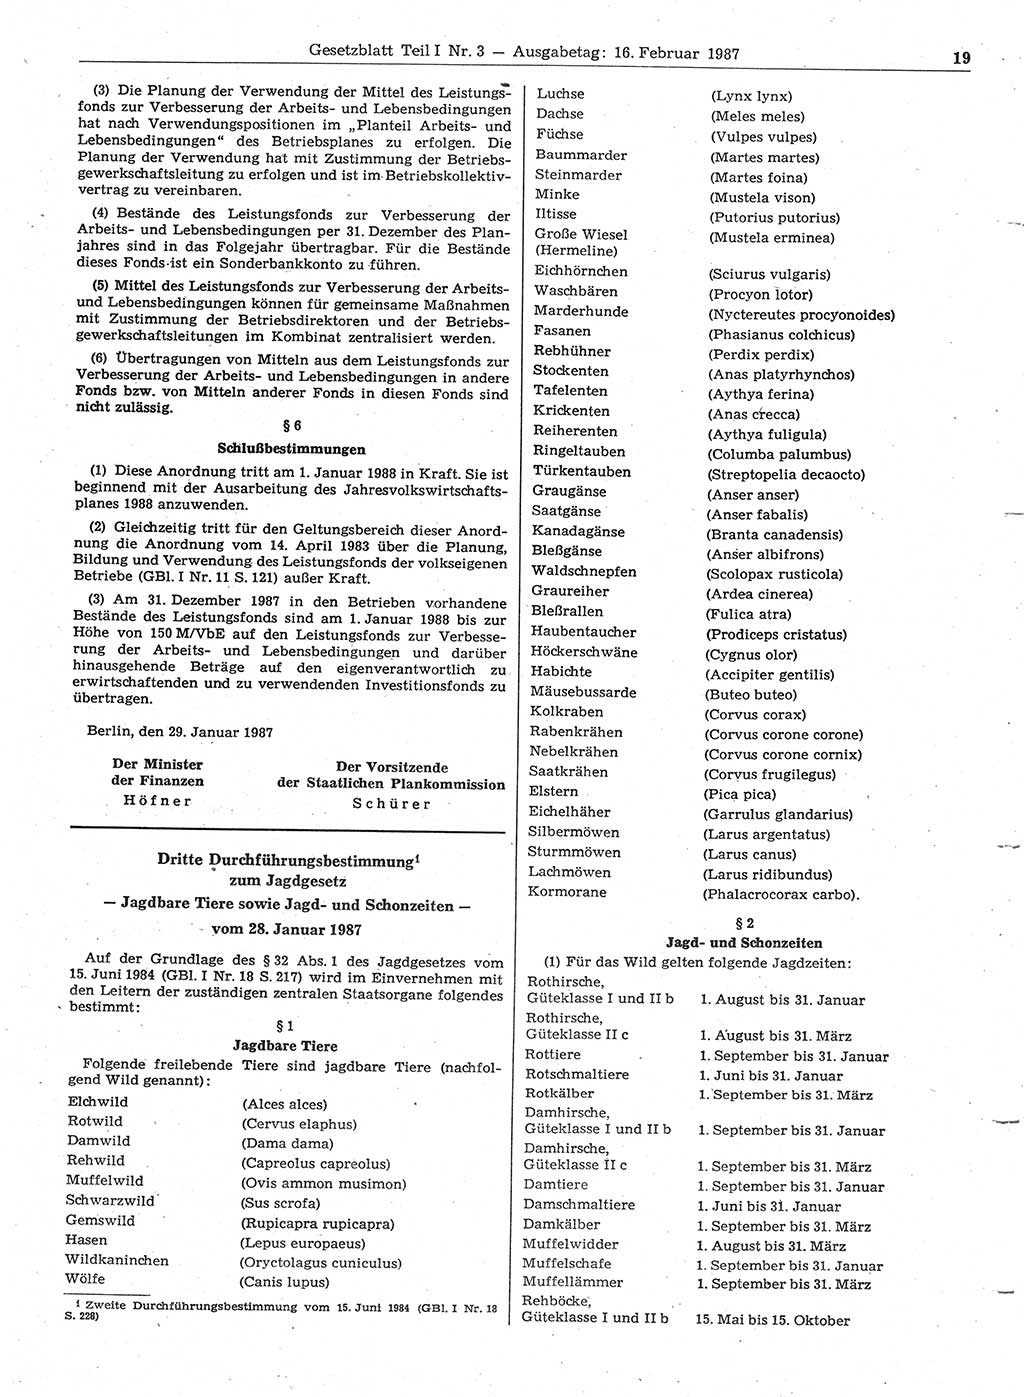 Gesetzblatt (GBl.) der Deutschen Demokratischen Republik (DDR) Teil Ⅰ 1987, Seite 19 (GBl. DDR Ⅰ 1987, S. 19)